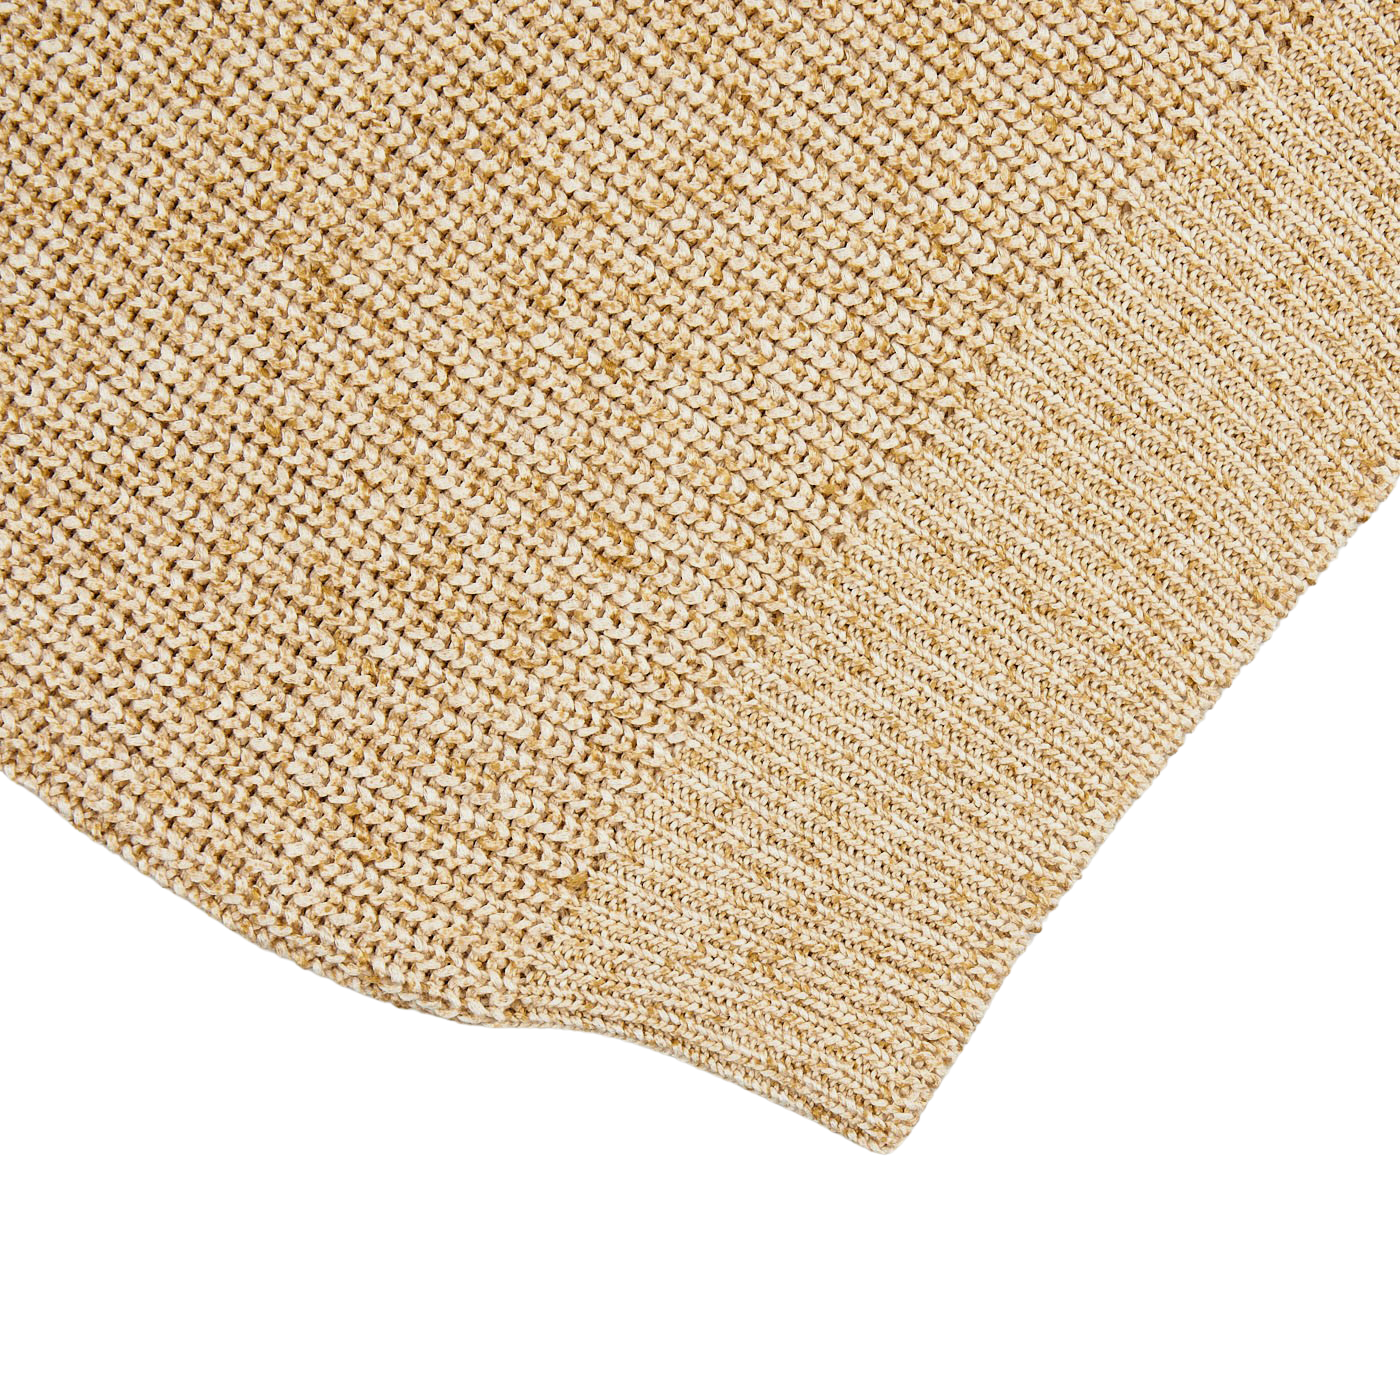 A close up of a Gran Sasso oat beige rib-stitch pure cotton 1/4 Zip Sweater.